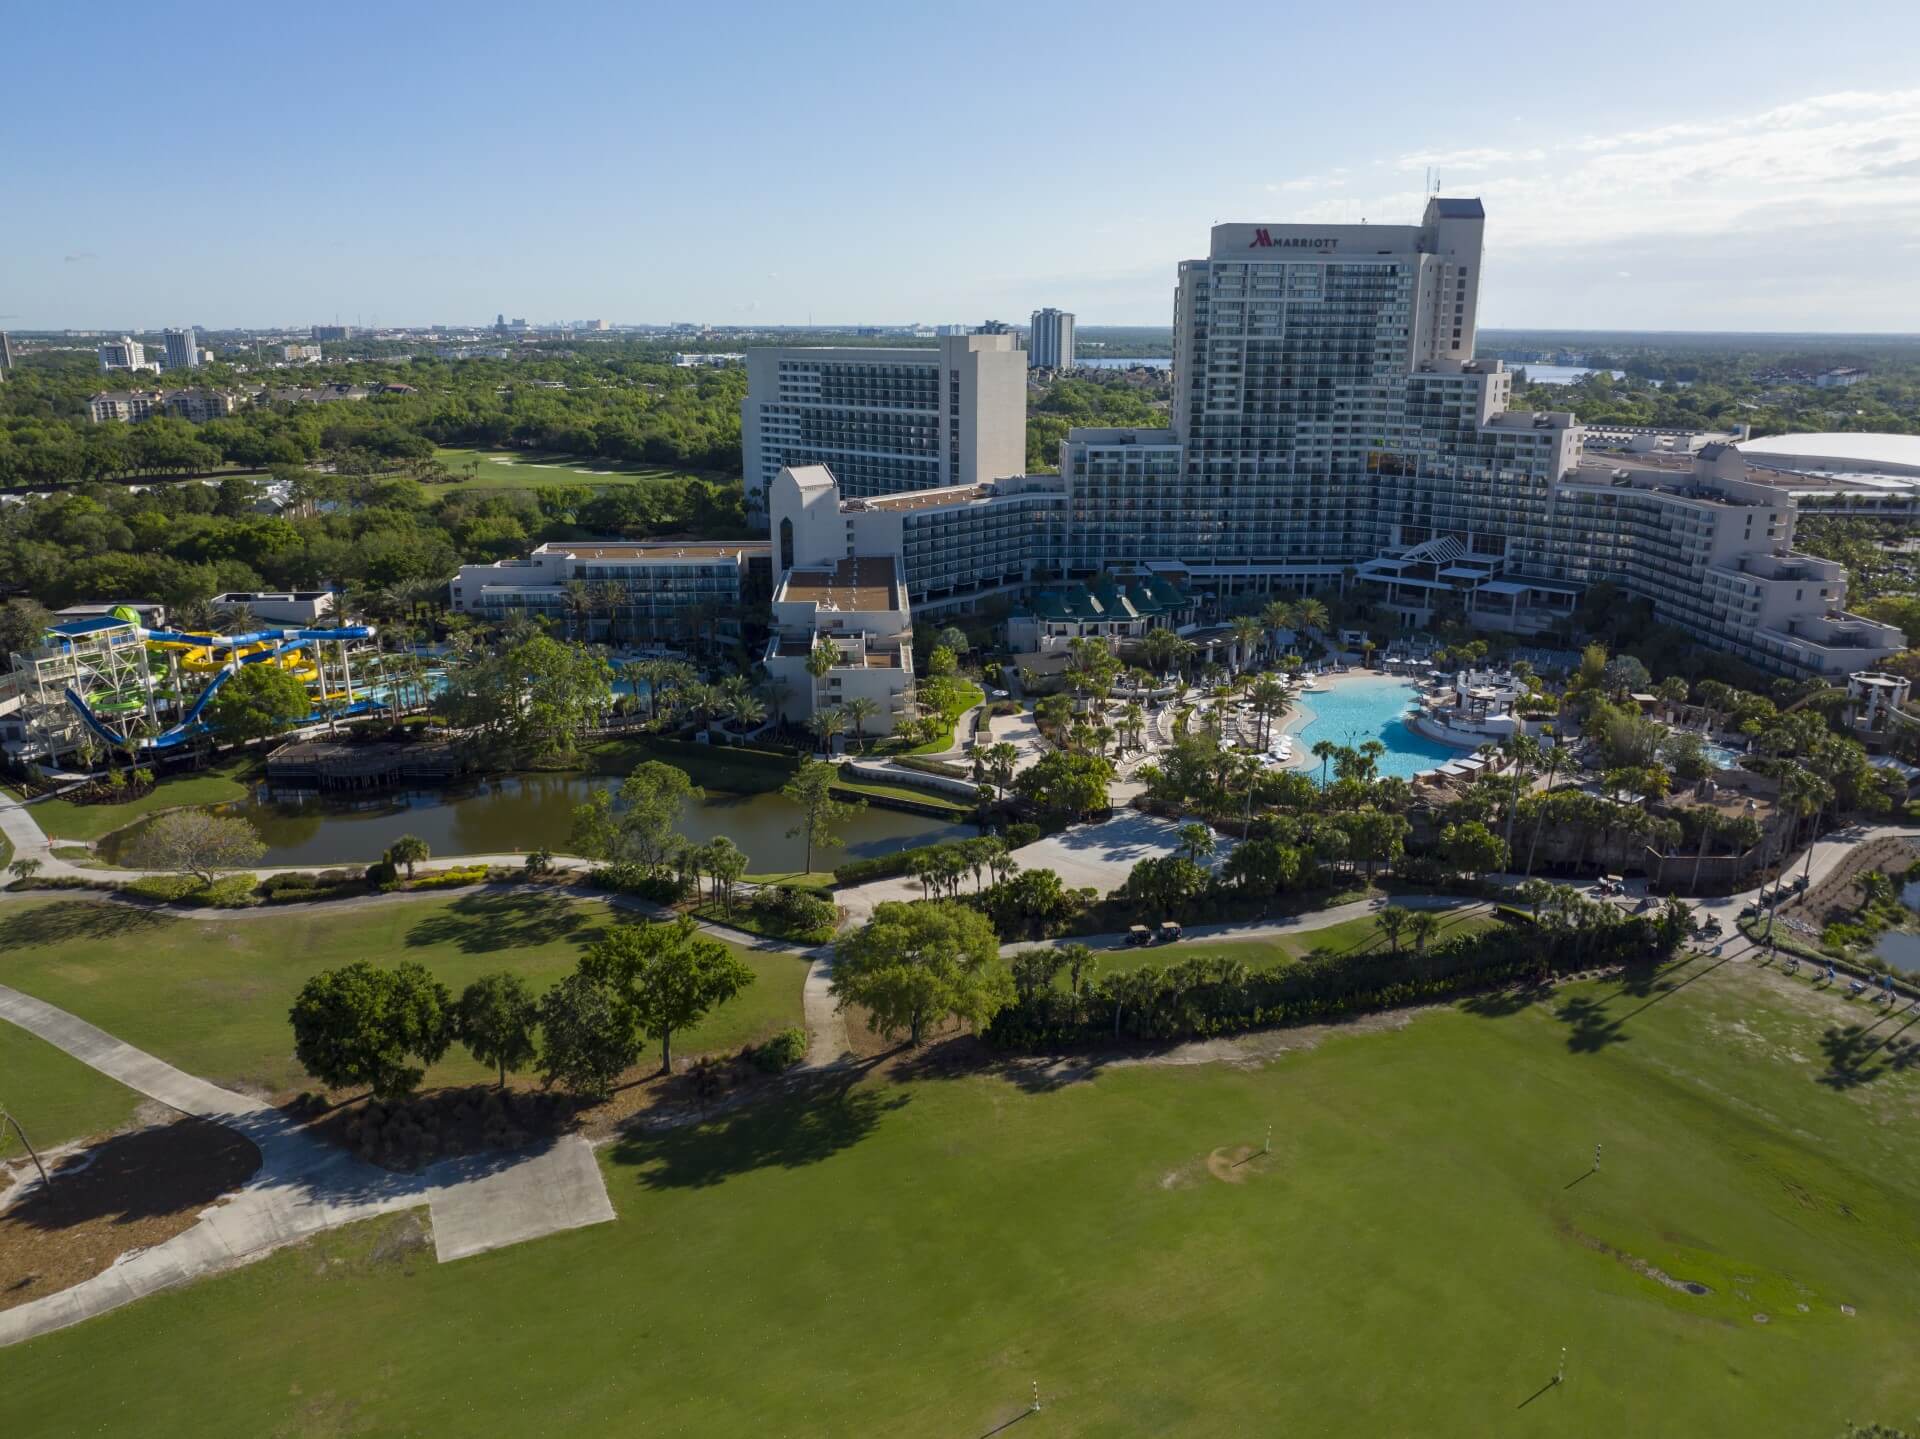 Full resort view of Orlando World Center Marriott including River Falls Waterpark